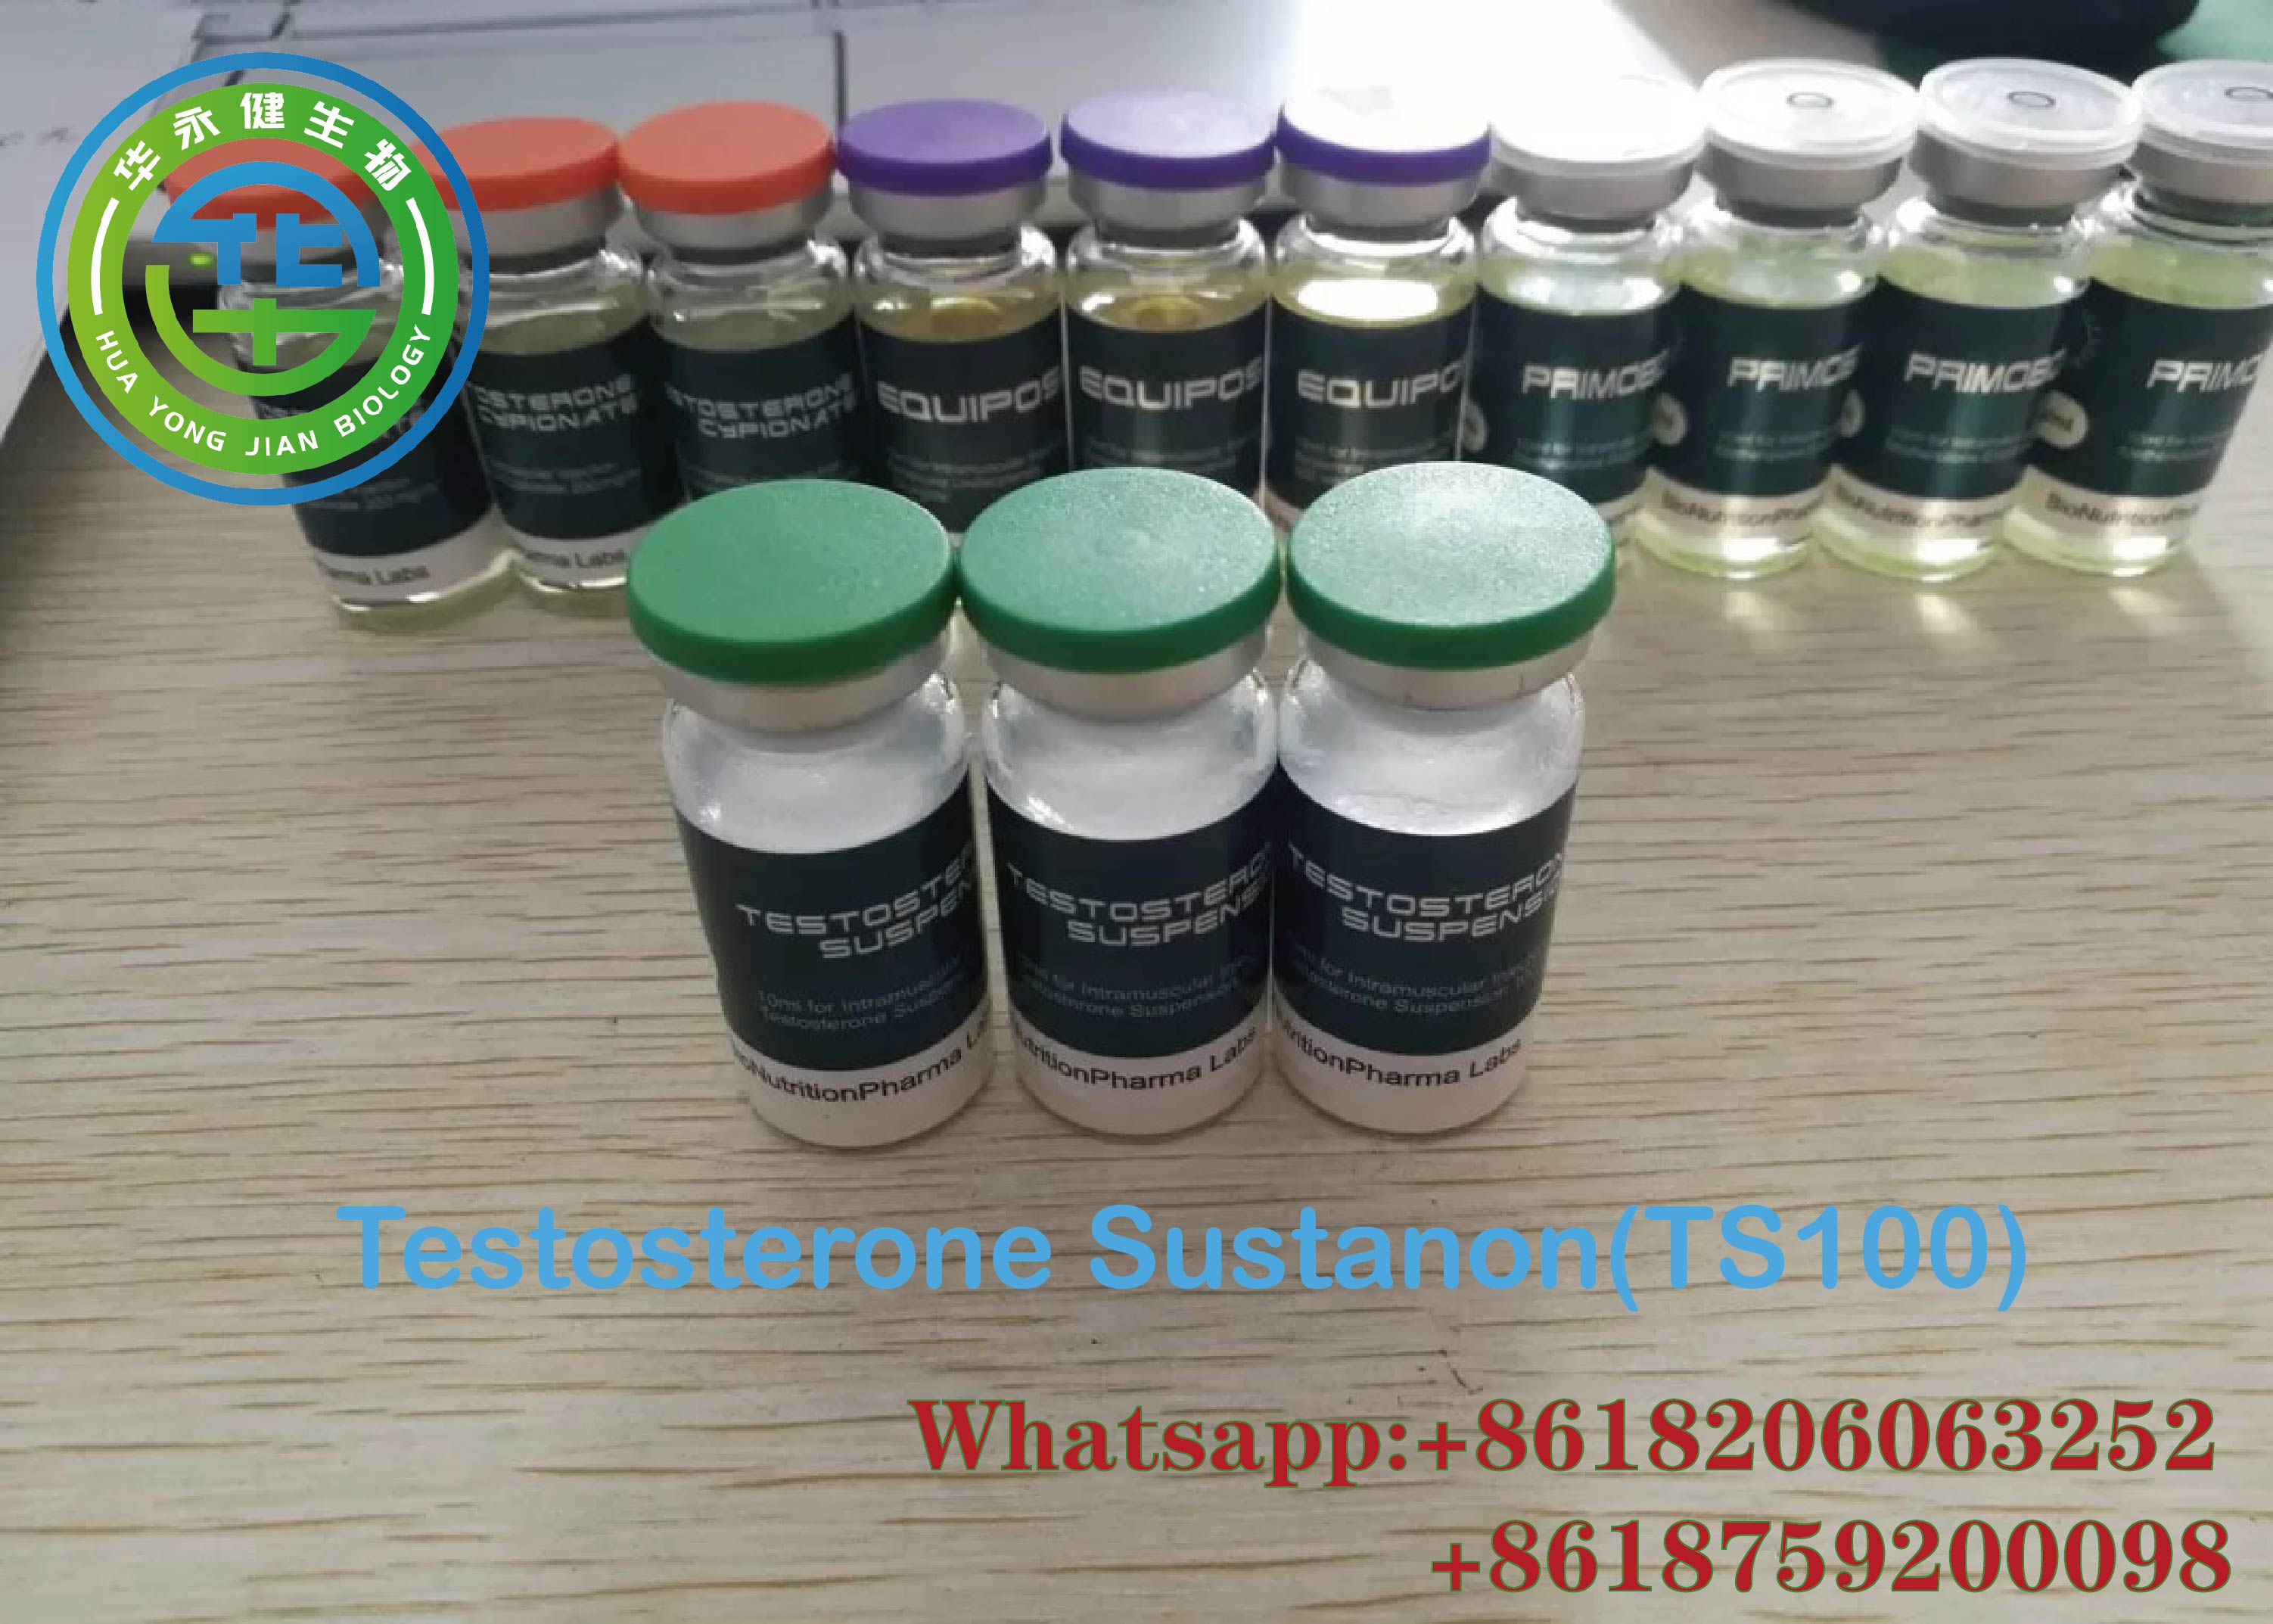 Testósterón Sustanon Yellow Liquid TS100 Inndælanleg vefaukandi sterar 100 mg/ml fyrir vöðvamassa Valin mynd